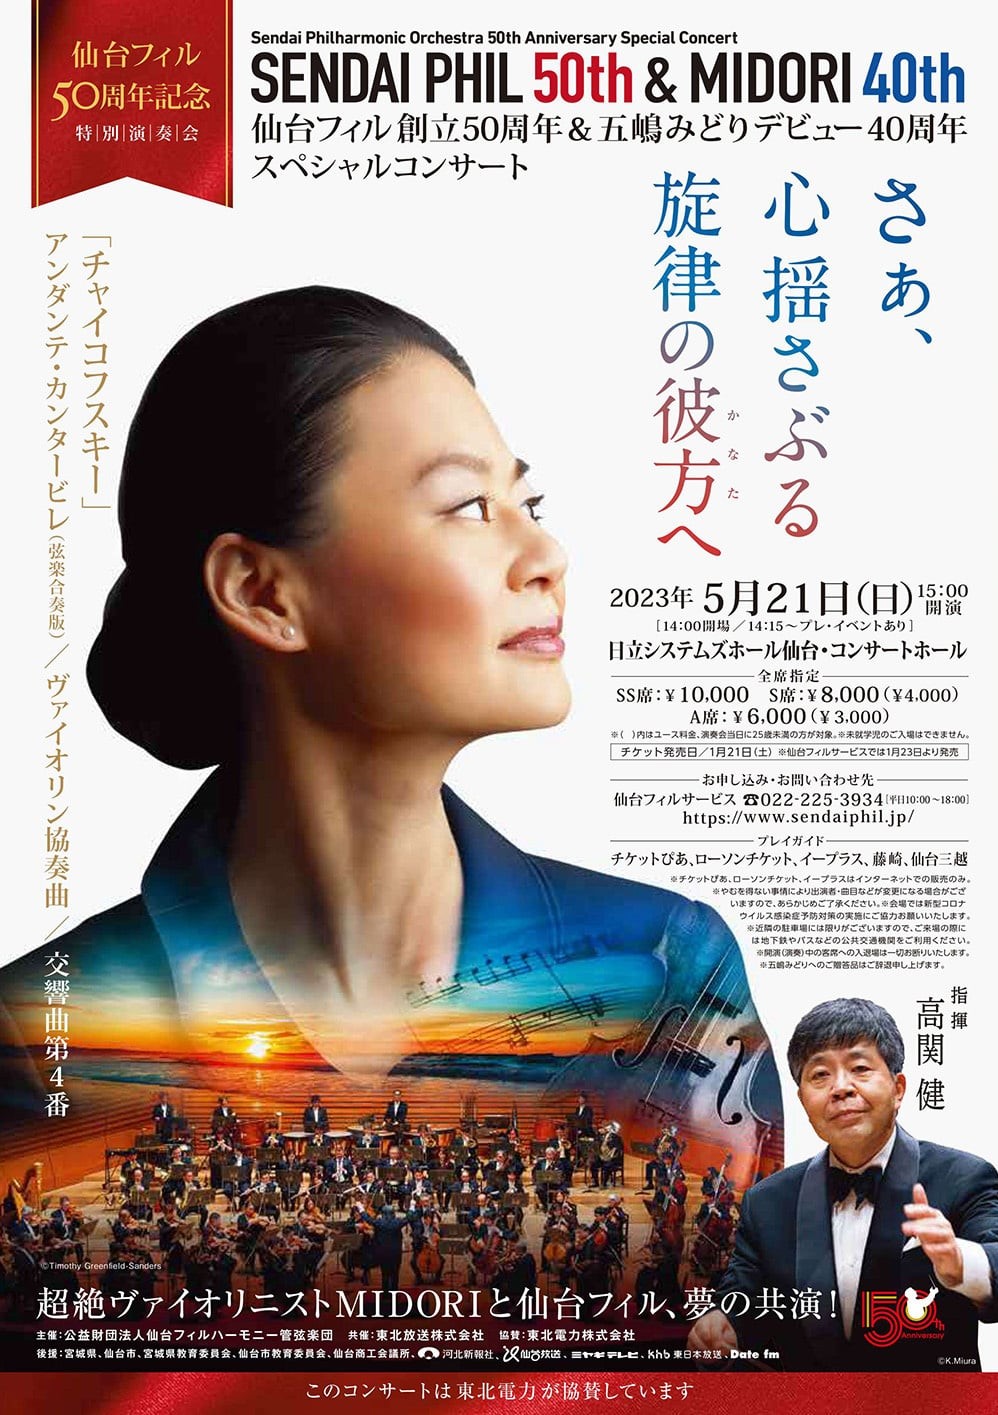 仙台フィルハーモニー管弦楽団仙台フィル50周年記念特別演奏会のフライヤー画像